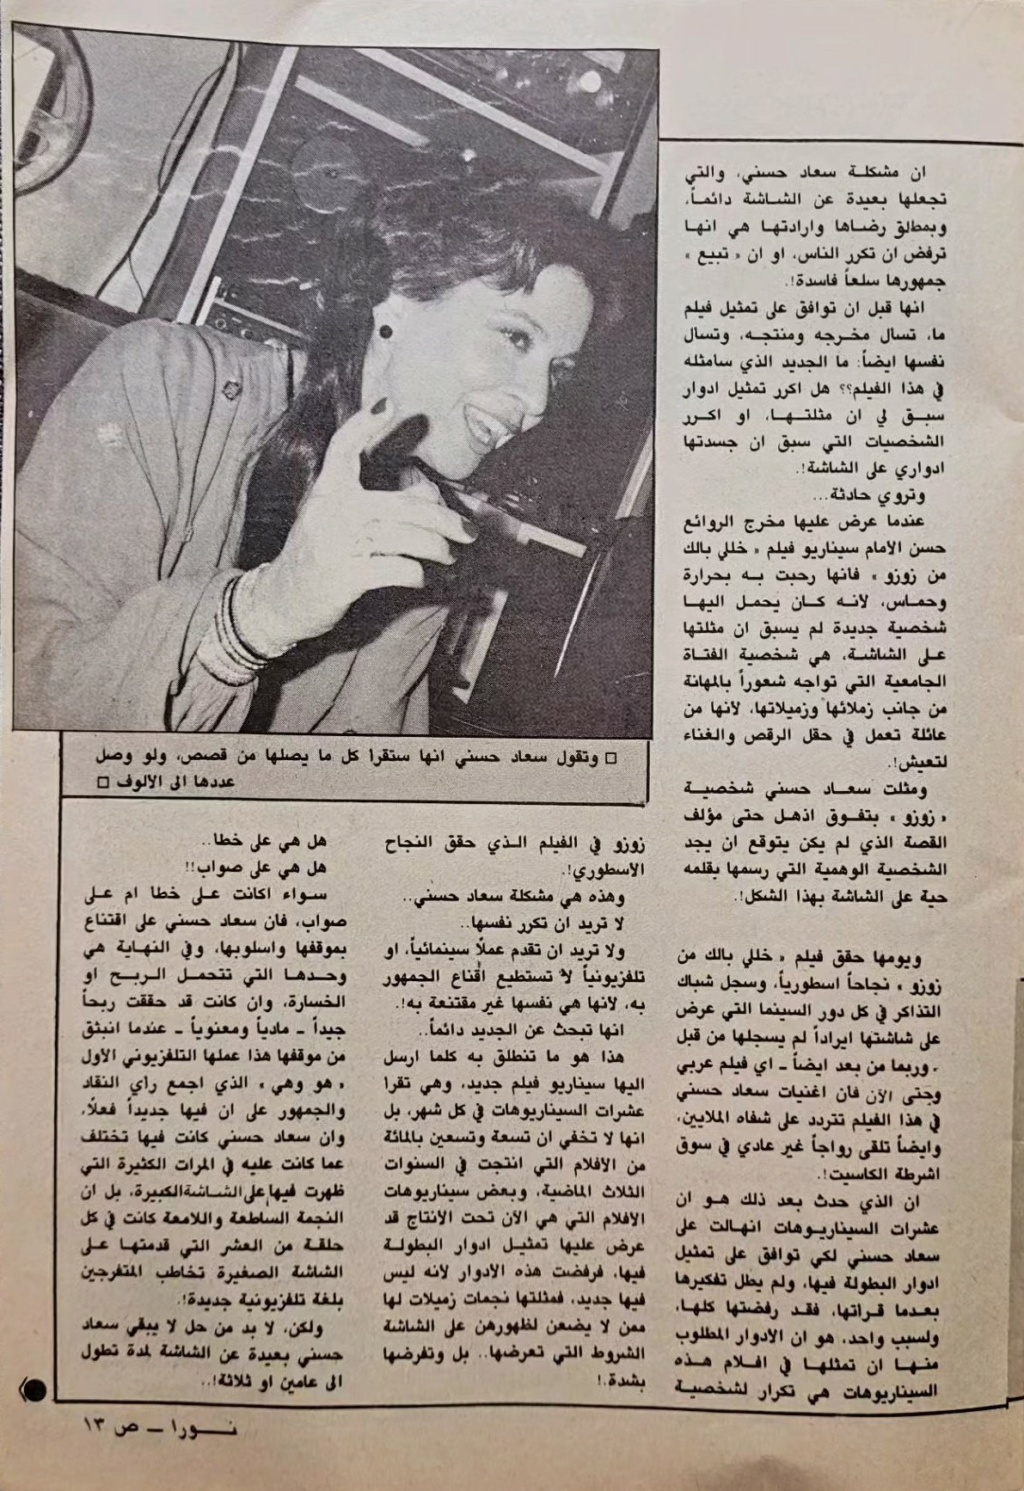 حسني - حوار صحفي : سعاد حسني .. تنادي أهل الموهبة وتبحث عندهم عن الجديد من القصص ! 1985 م 2104